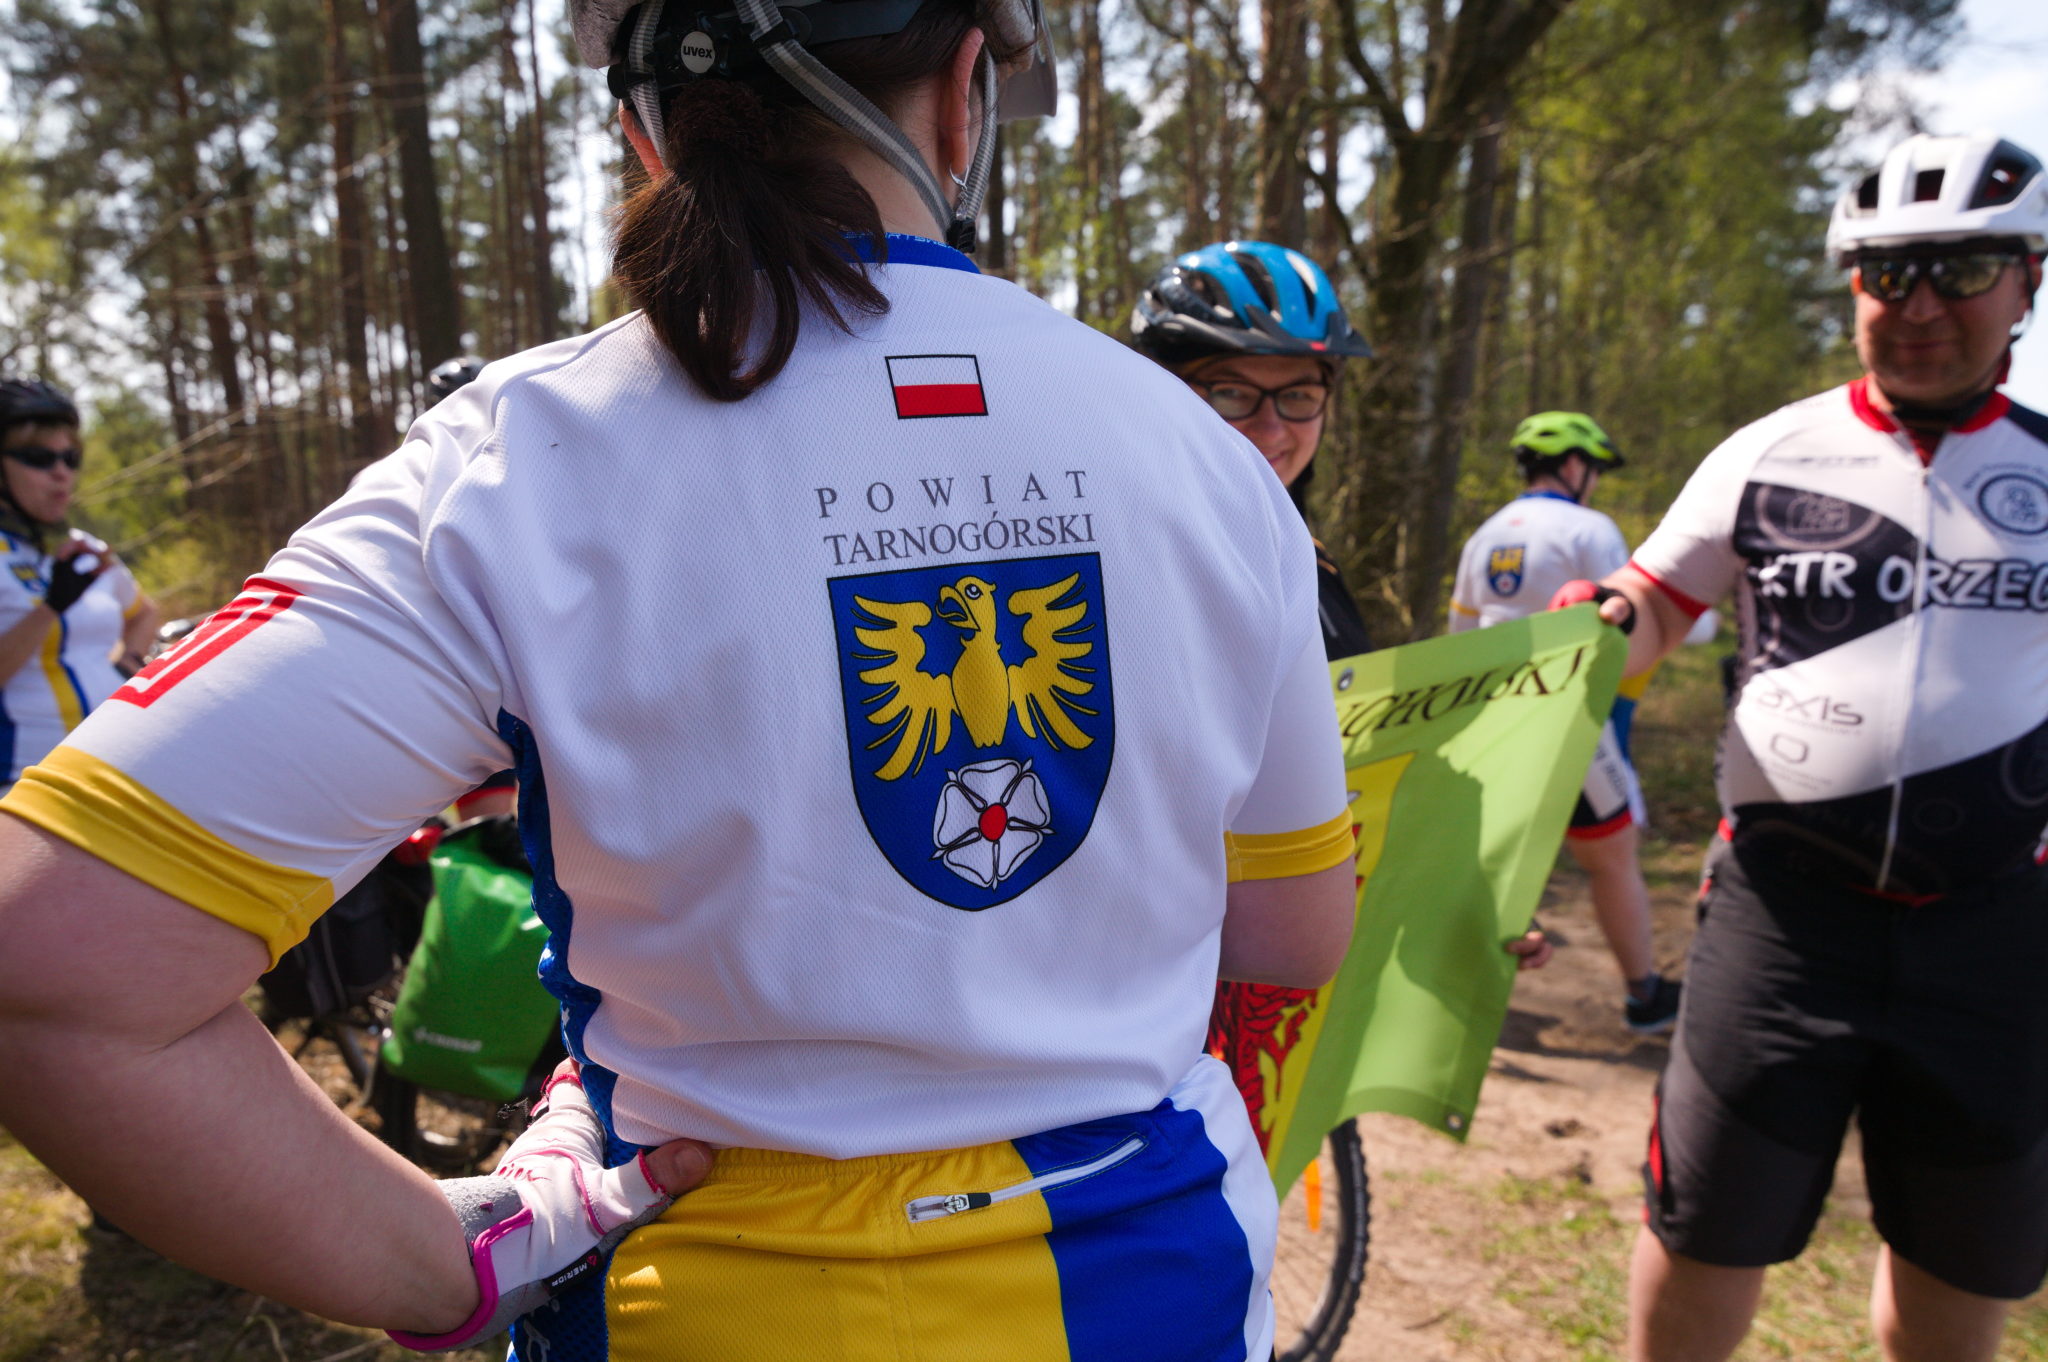 kobieta na rowerze w koszulce z logo powiatu